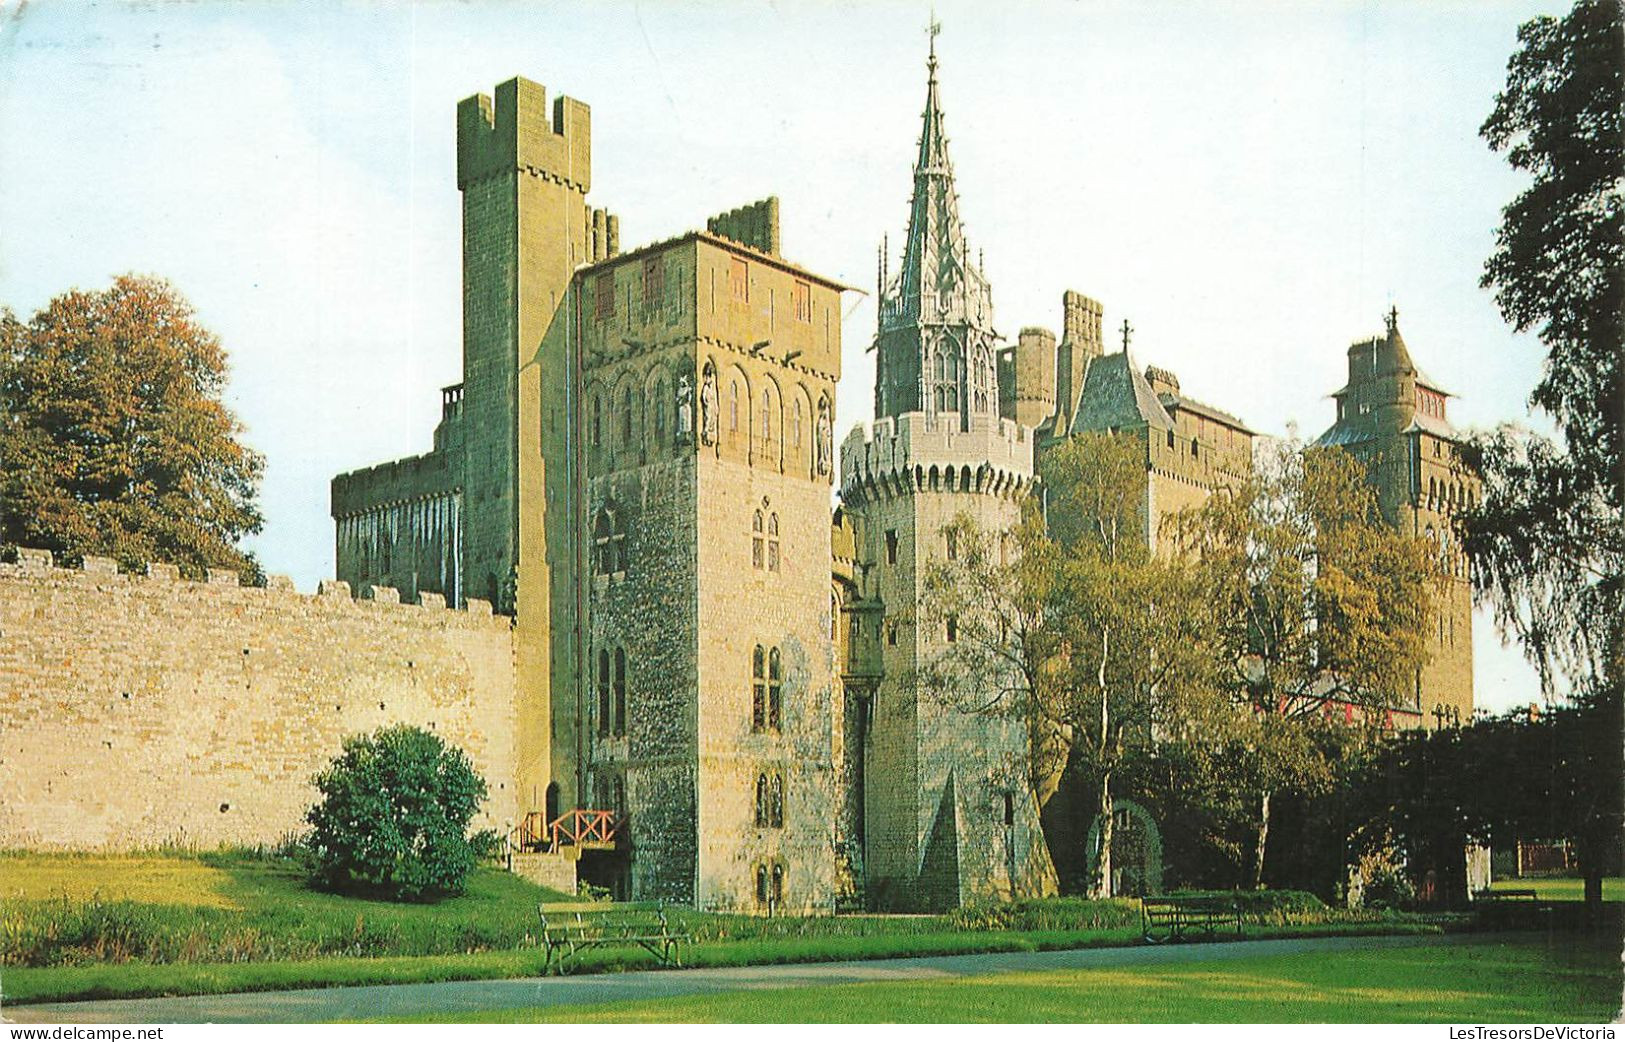 ROYAUME-UNI - Cardiff Castle - West View - Vue De L'extérieure - Carte Postale Ancienne - Glamorgan